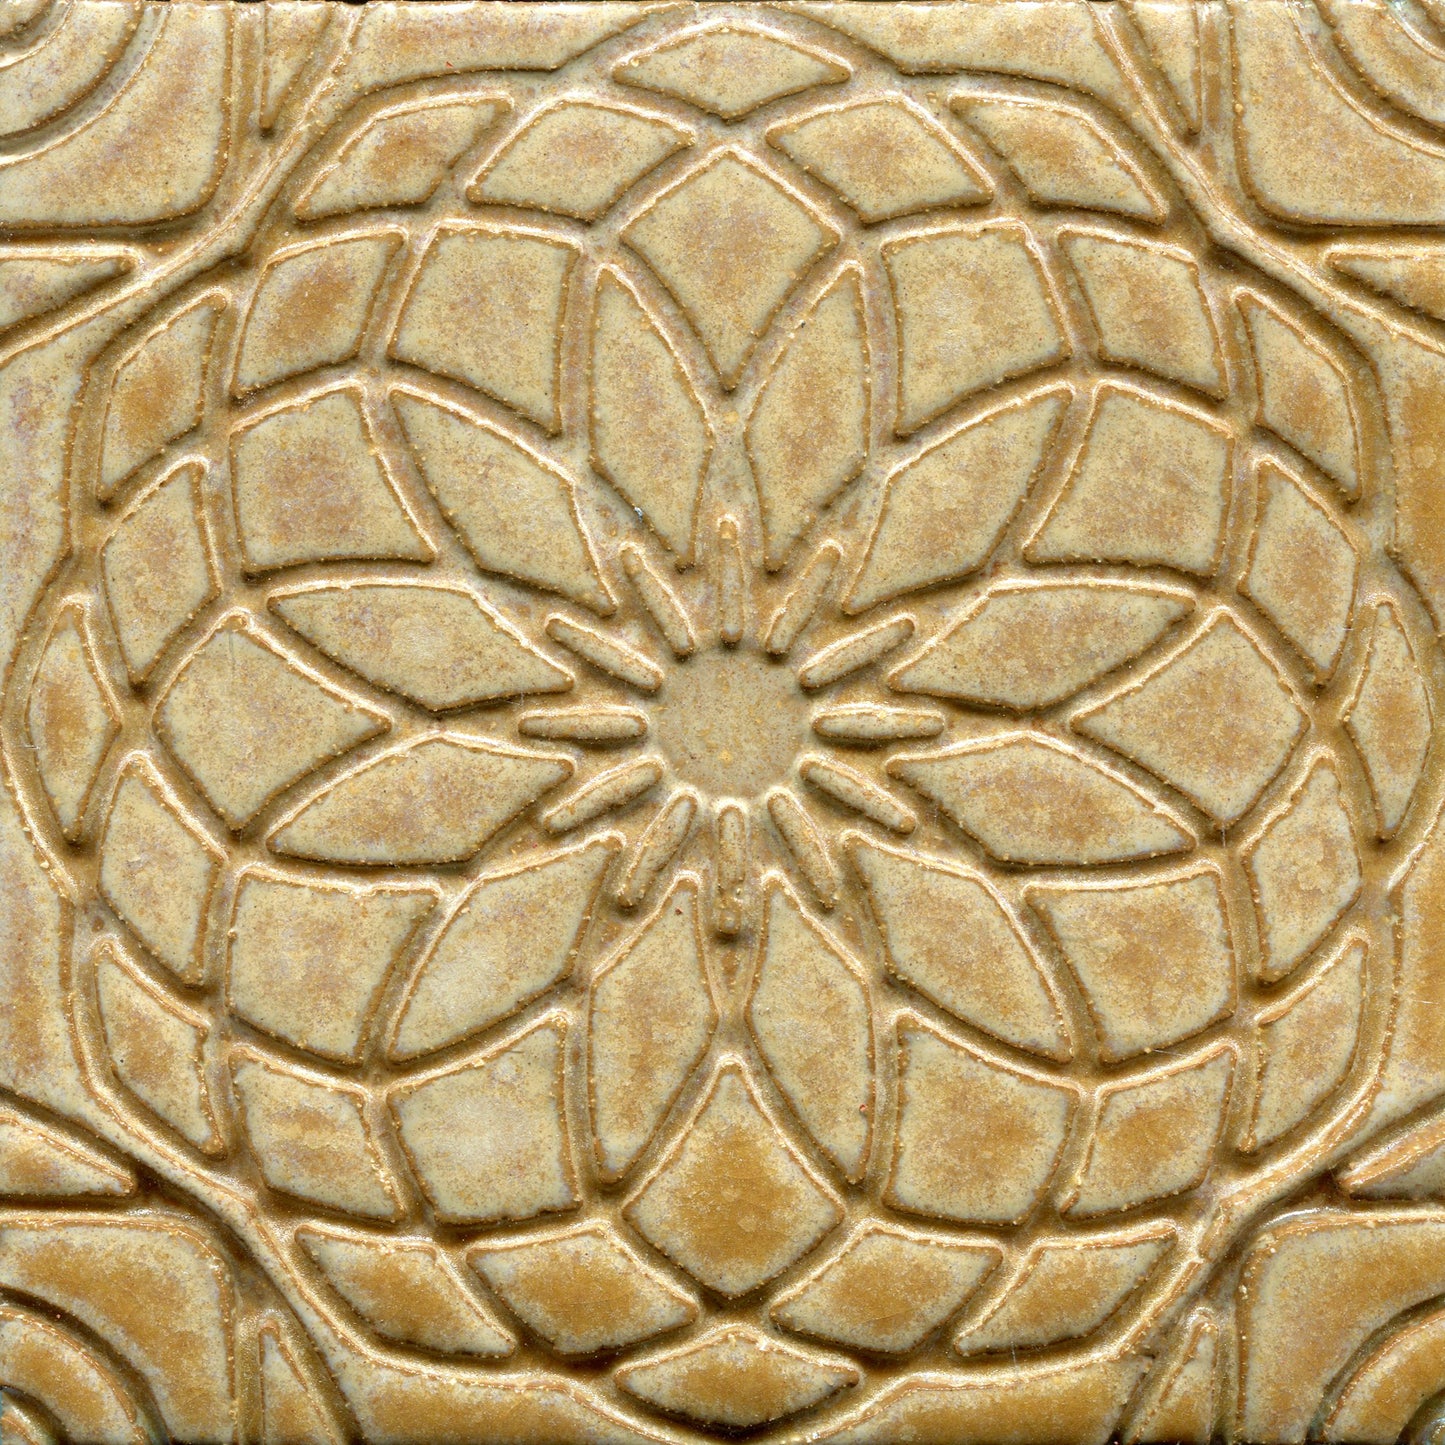 Rose Stamped Tile